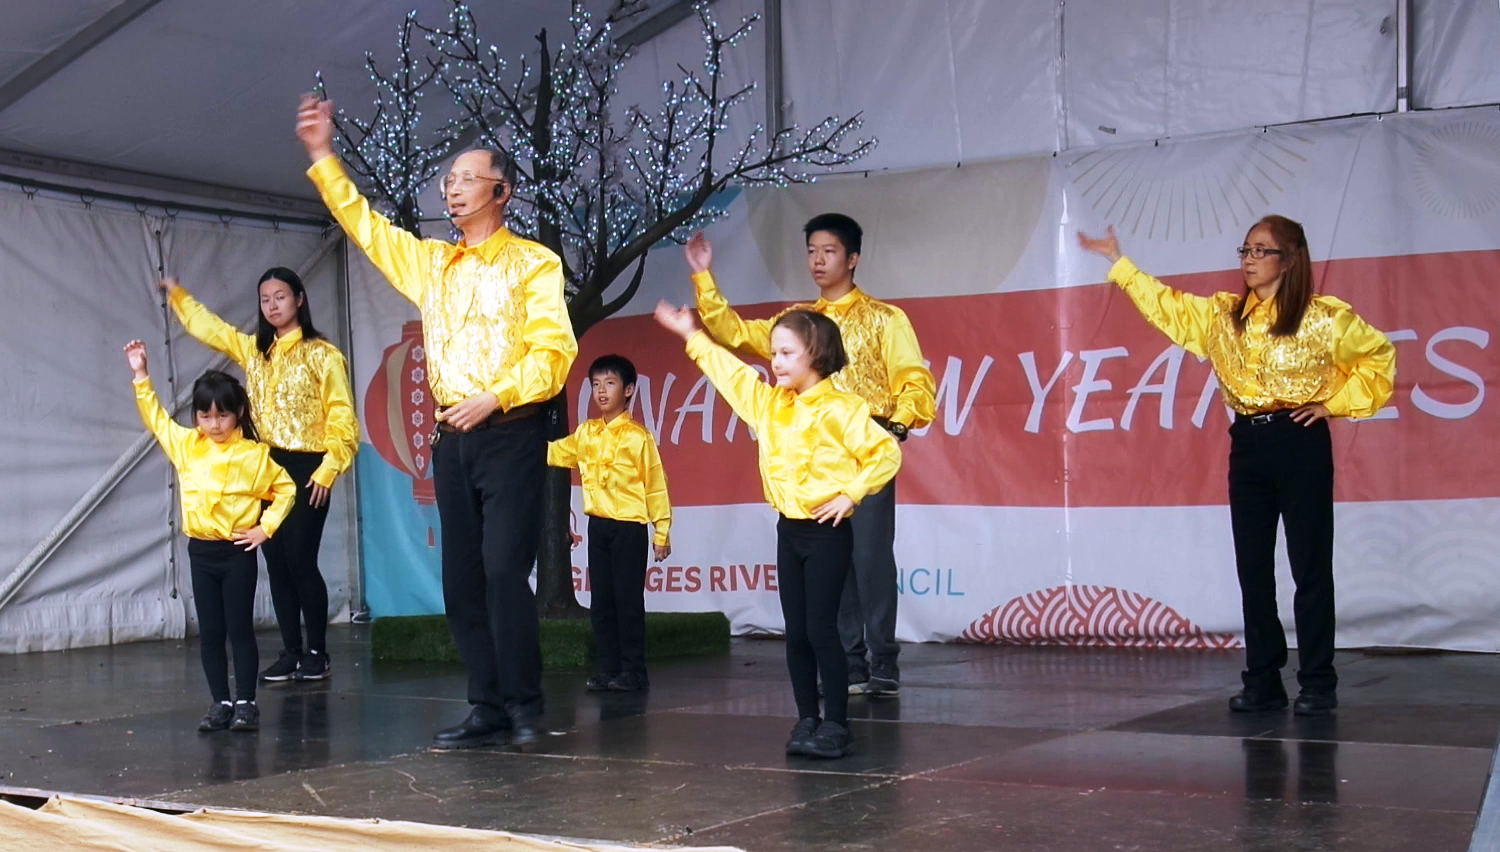 中華文化學校連續九年應邀參加當地市政府慶祝農曆新年文藝演出